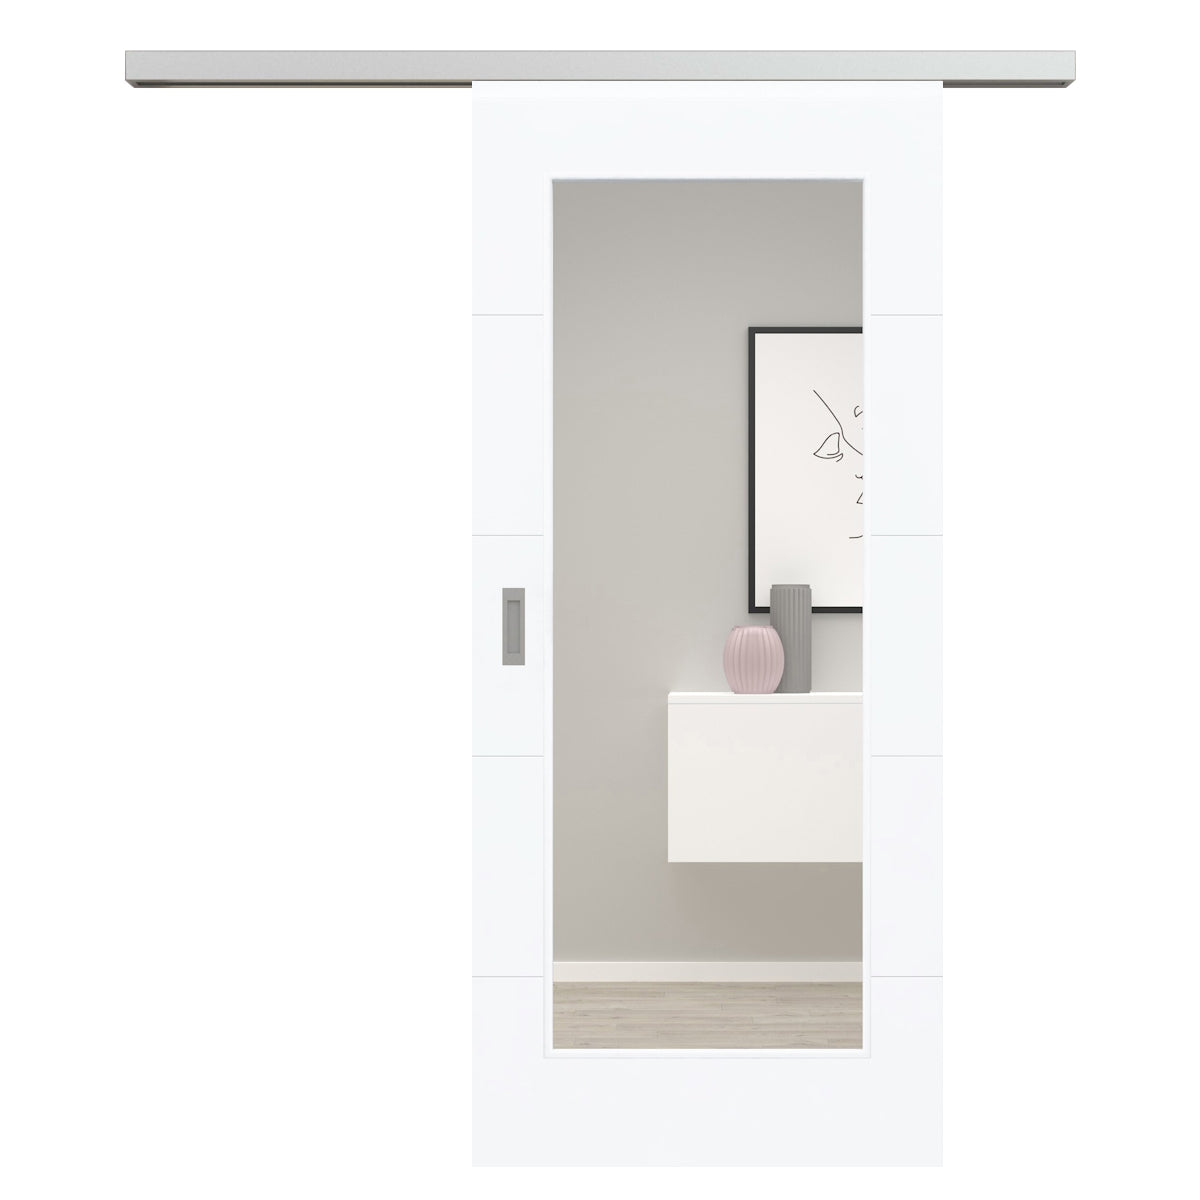 Schiebetür für Set mit Edelstahllaufkasten brillant-weiß modern mit 4 Rillen und Lichtausschnitt - Modell Designtür Q43LA